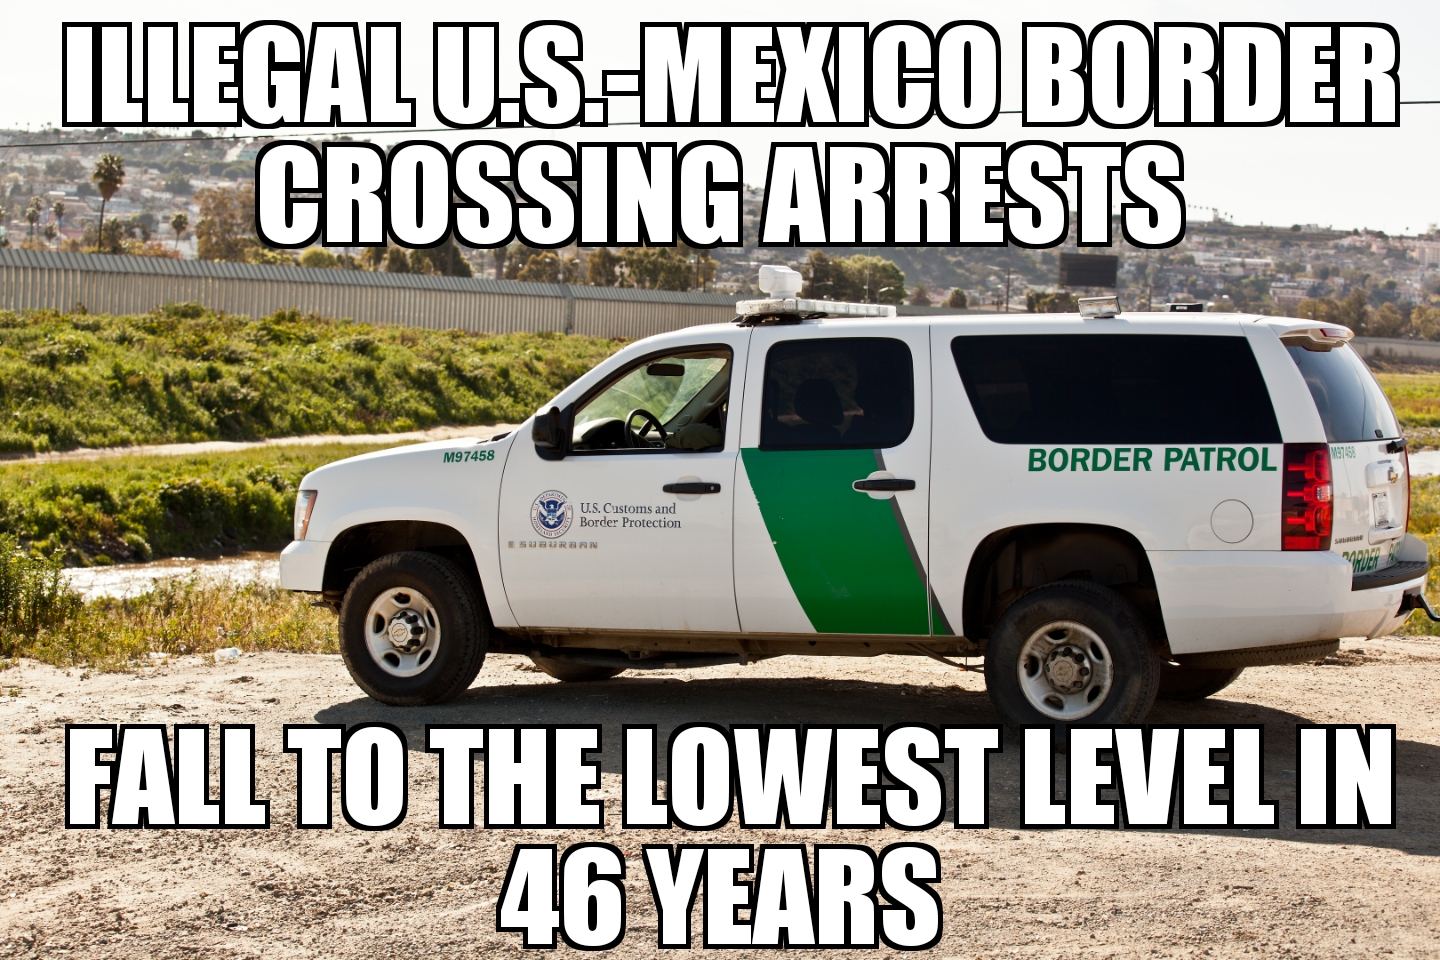 U.S.-Mexico border arrests drop